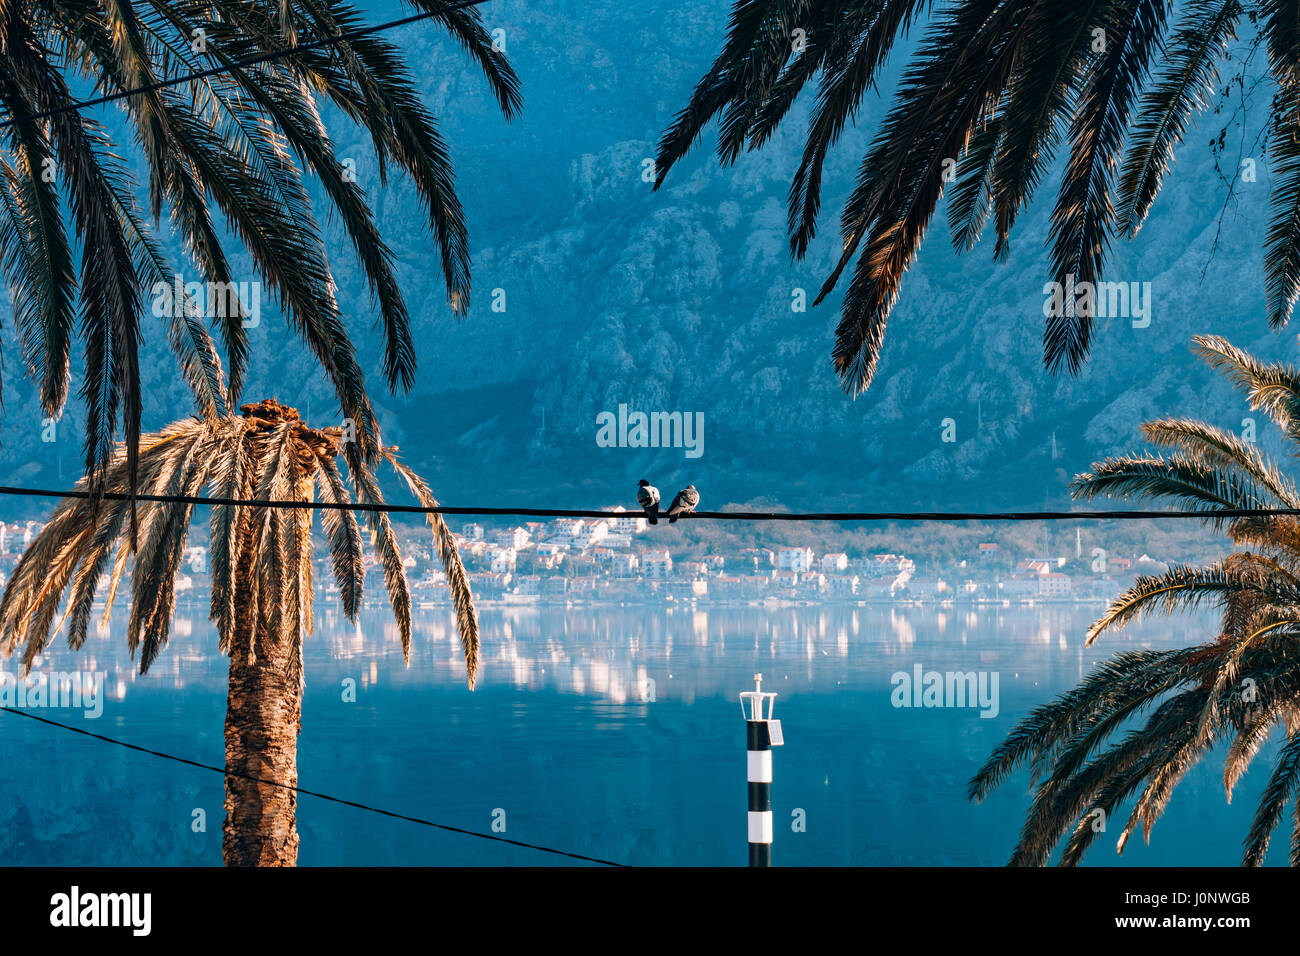 City Dobrota in the Bay of Kotor, Montenegro. Stock Photo